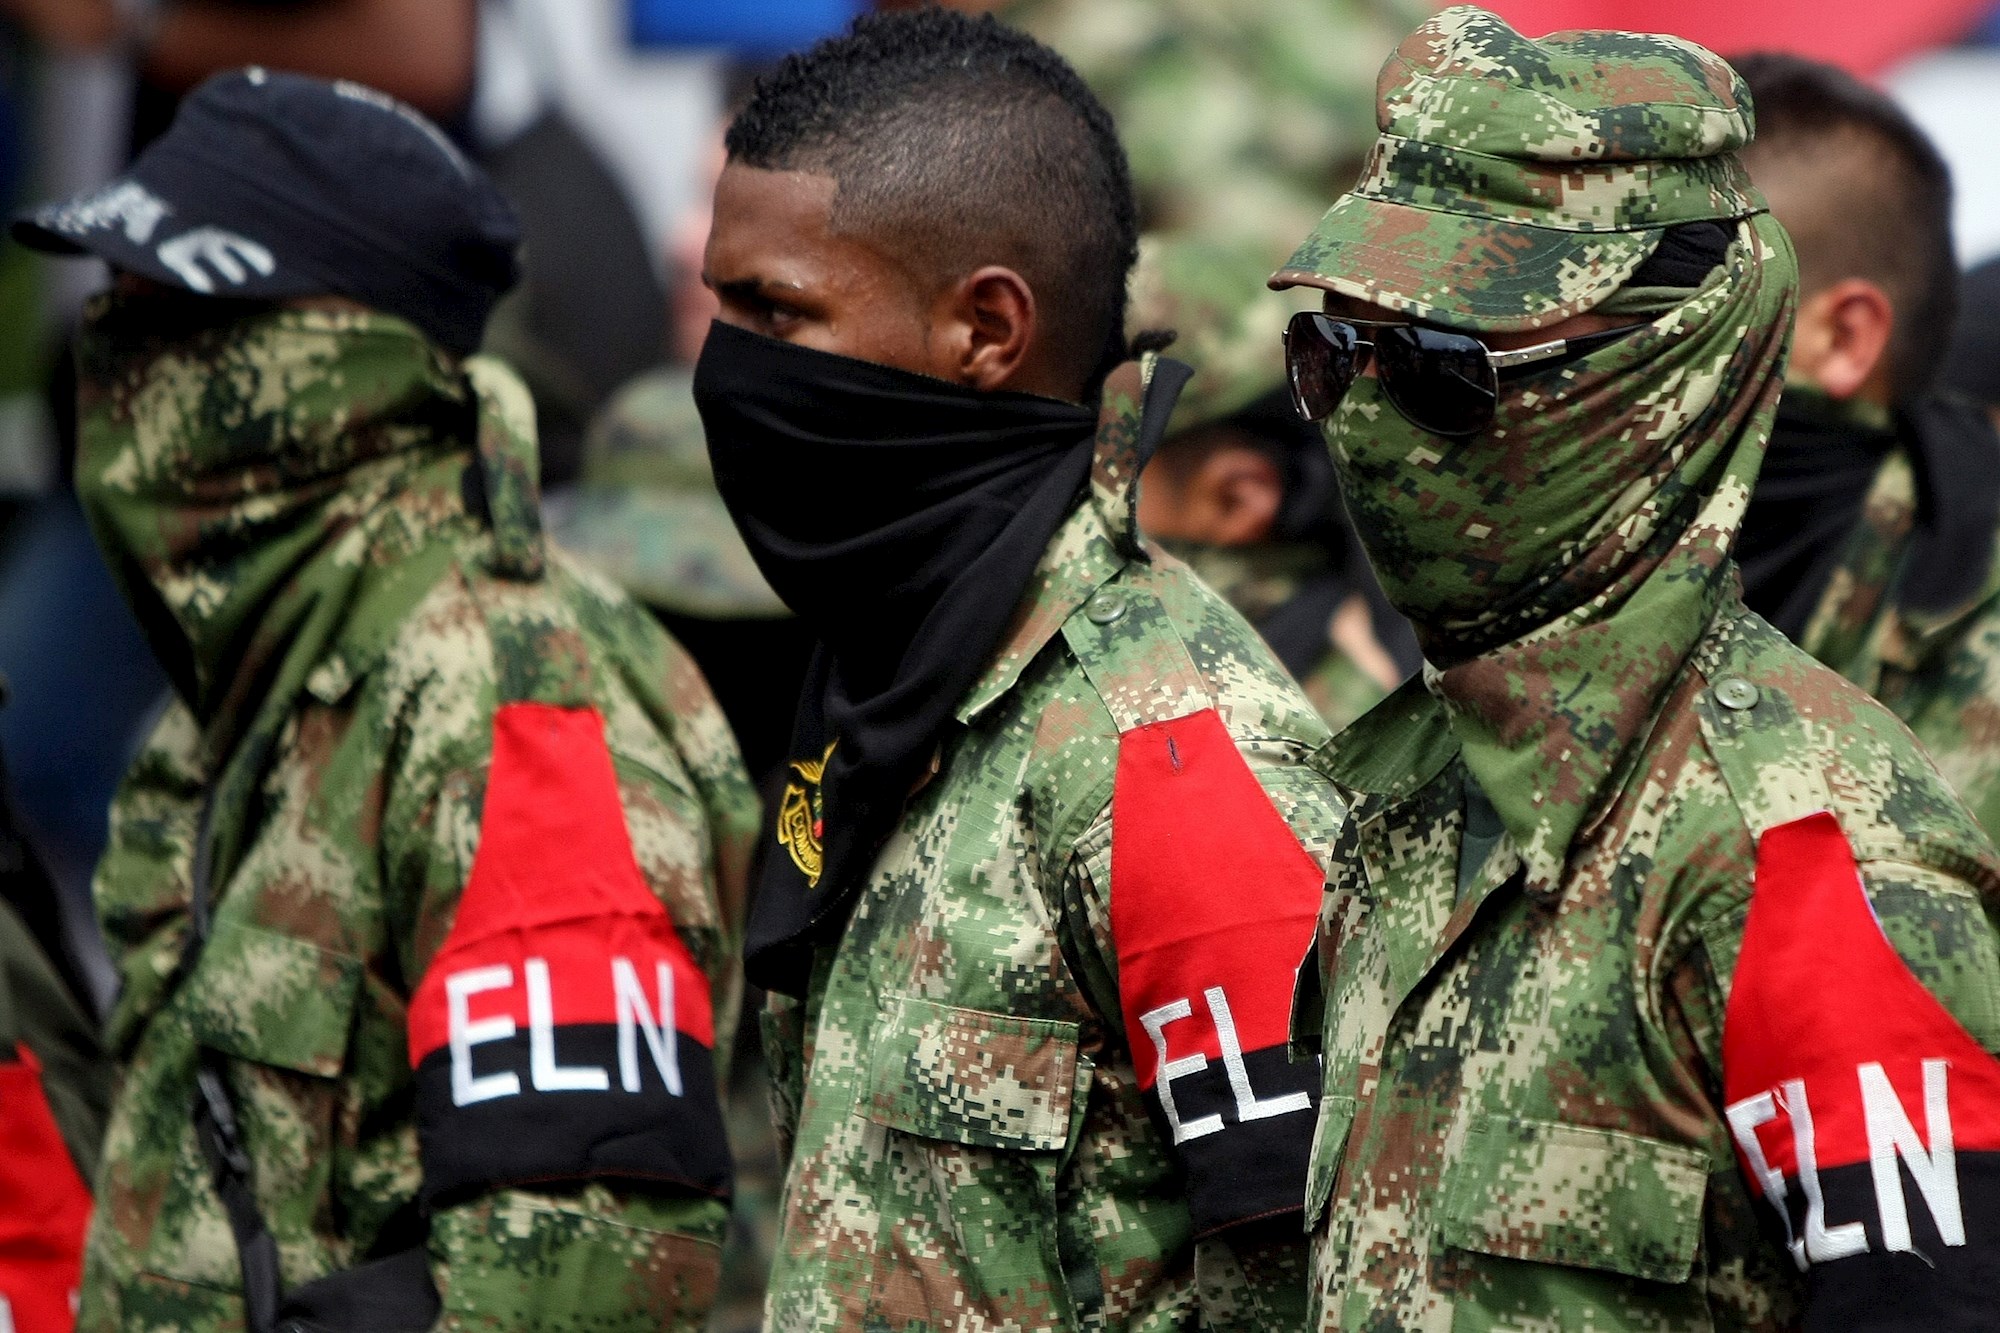 Infante de la Marina colombiana murió durante enfrentamiento con el ELN